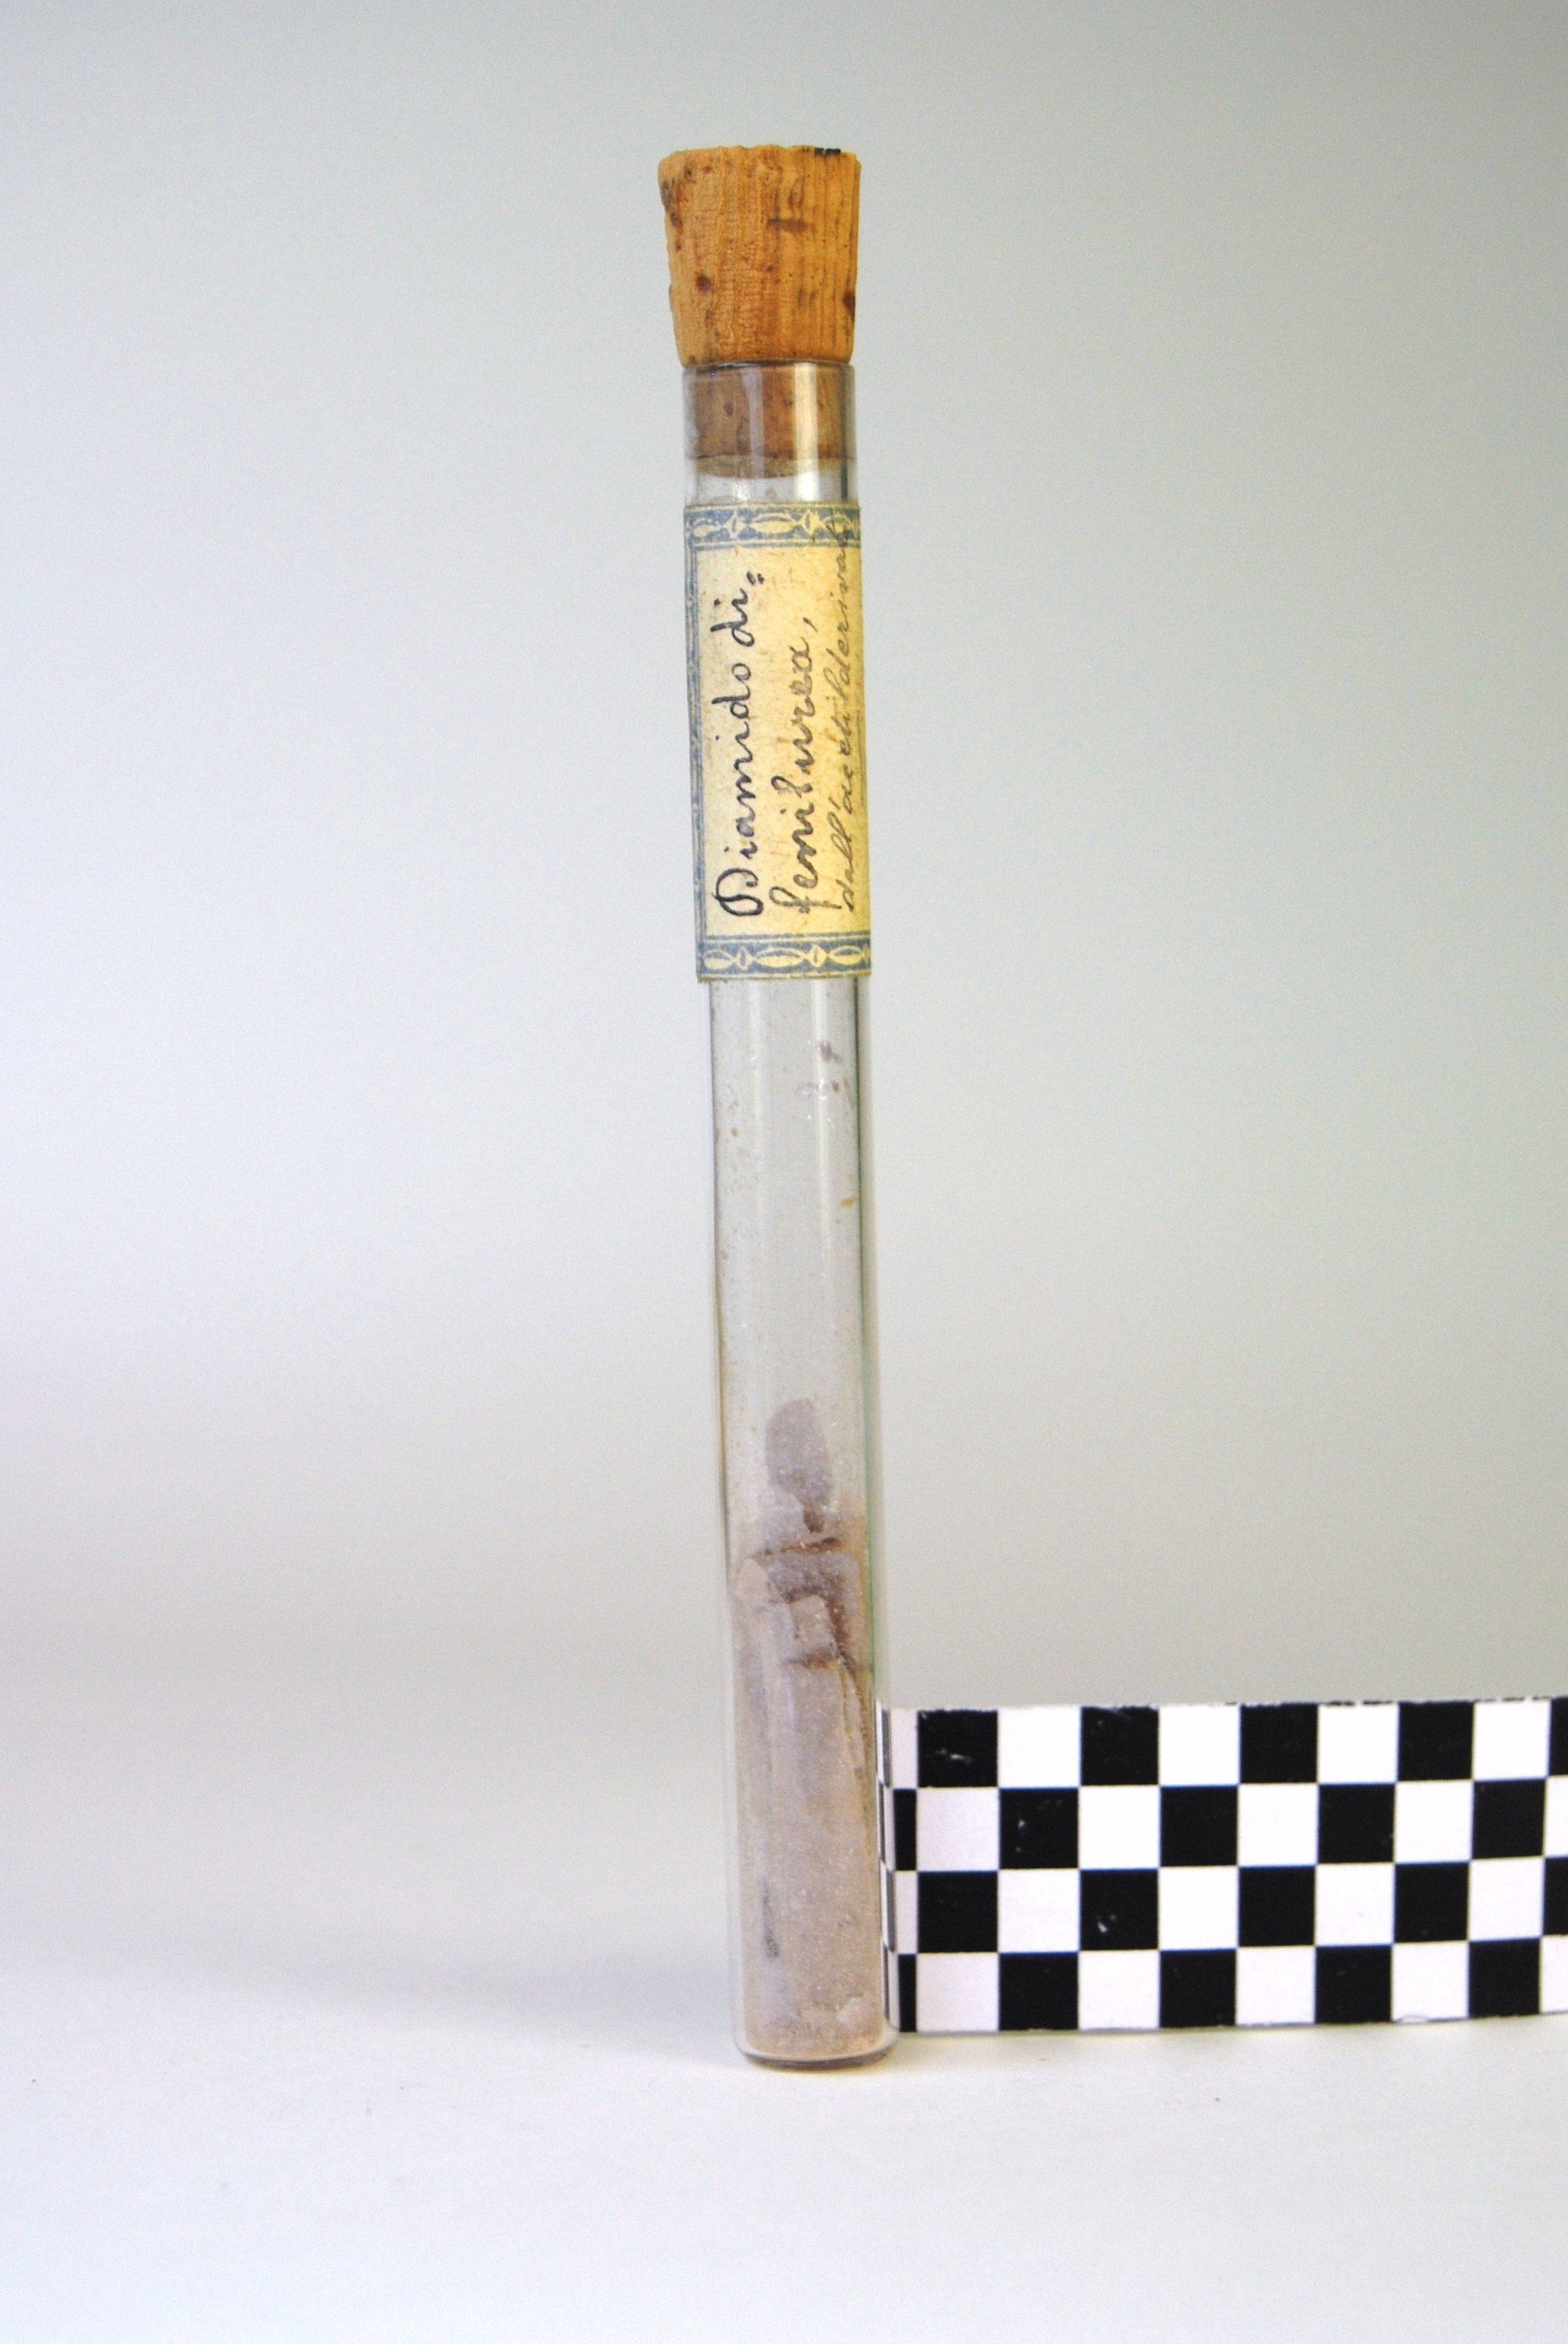 diamido di fenilurea (prodotto chimico, di sintesi) di Ugo Schiff (laboratorio) - scuola chimica fiorentina (metà/ inizio XIX/ XX)